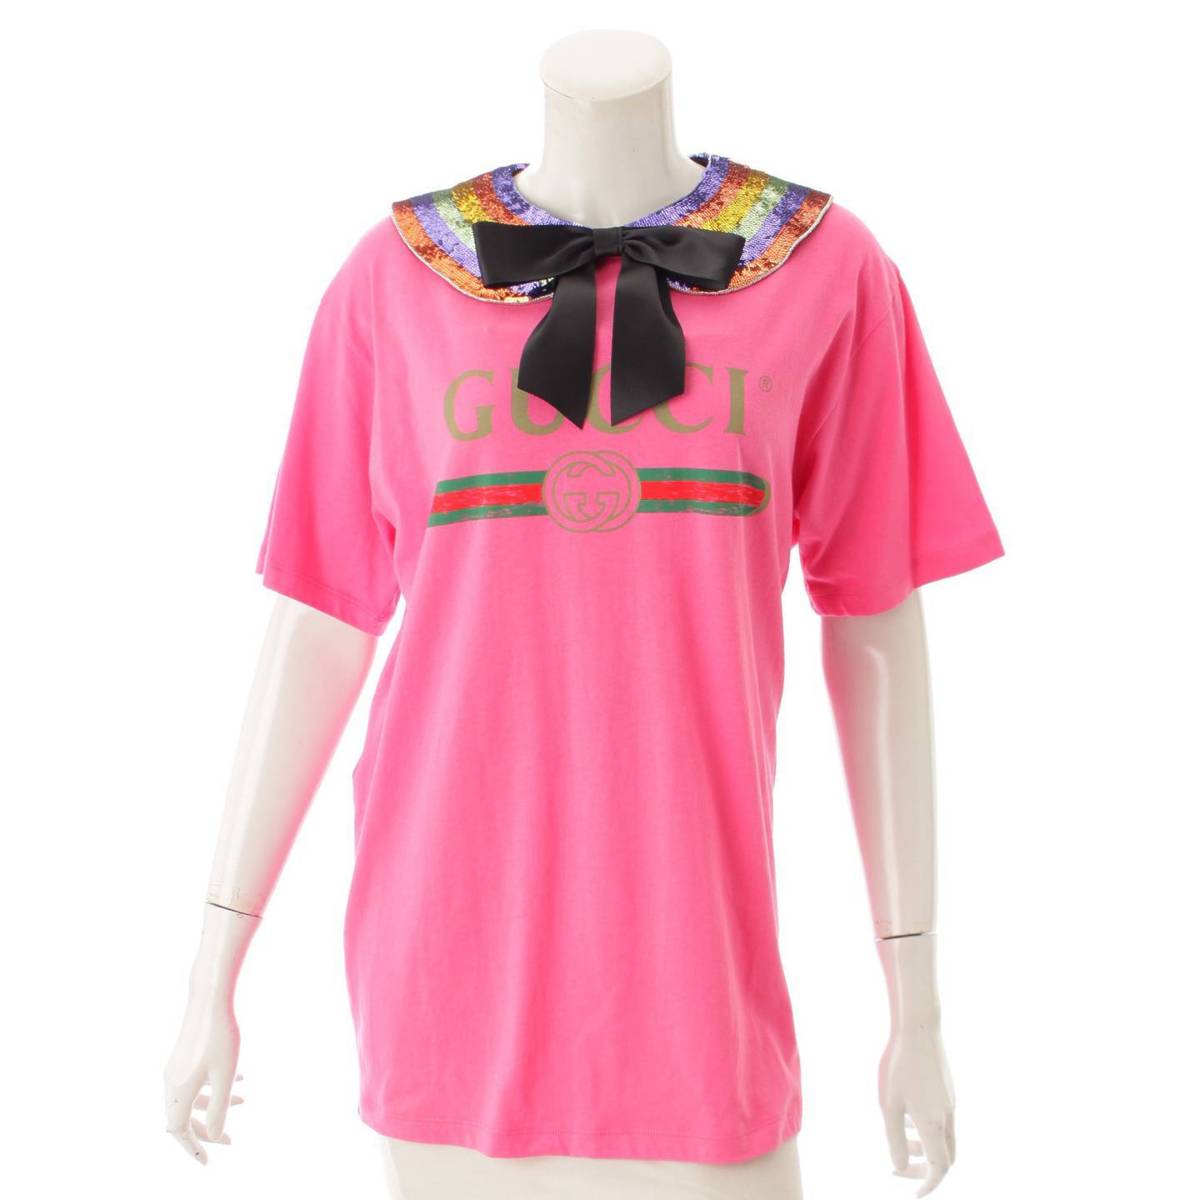 グッチ(Gucci) オールドロゴ スパンコール襟付き Tシャツ 469307 ピンク S